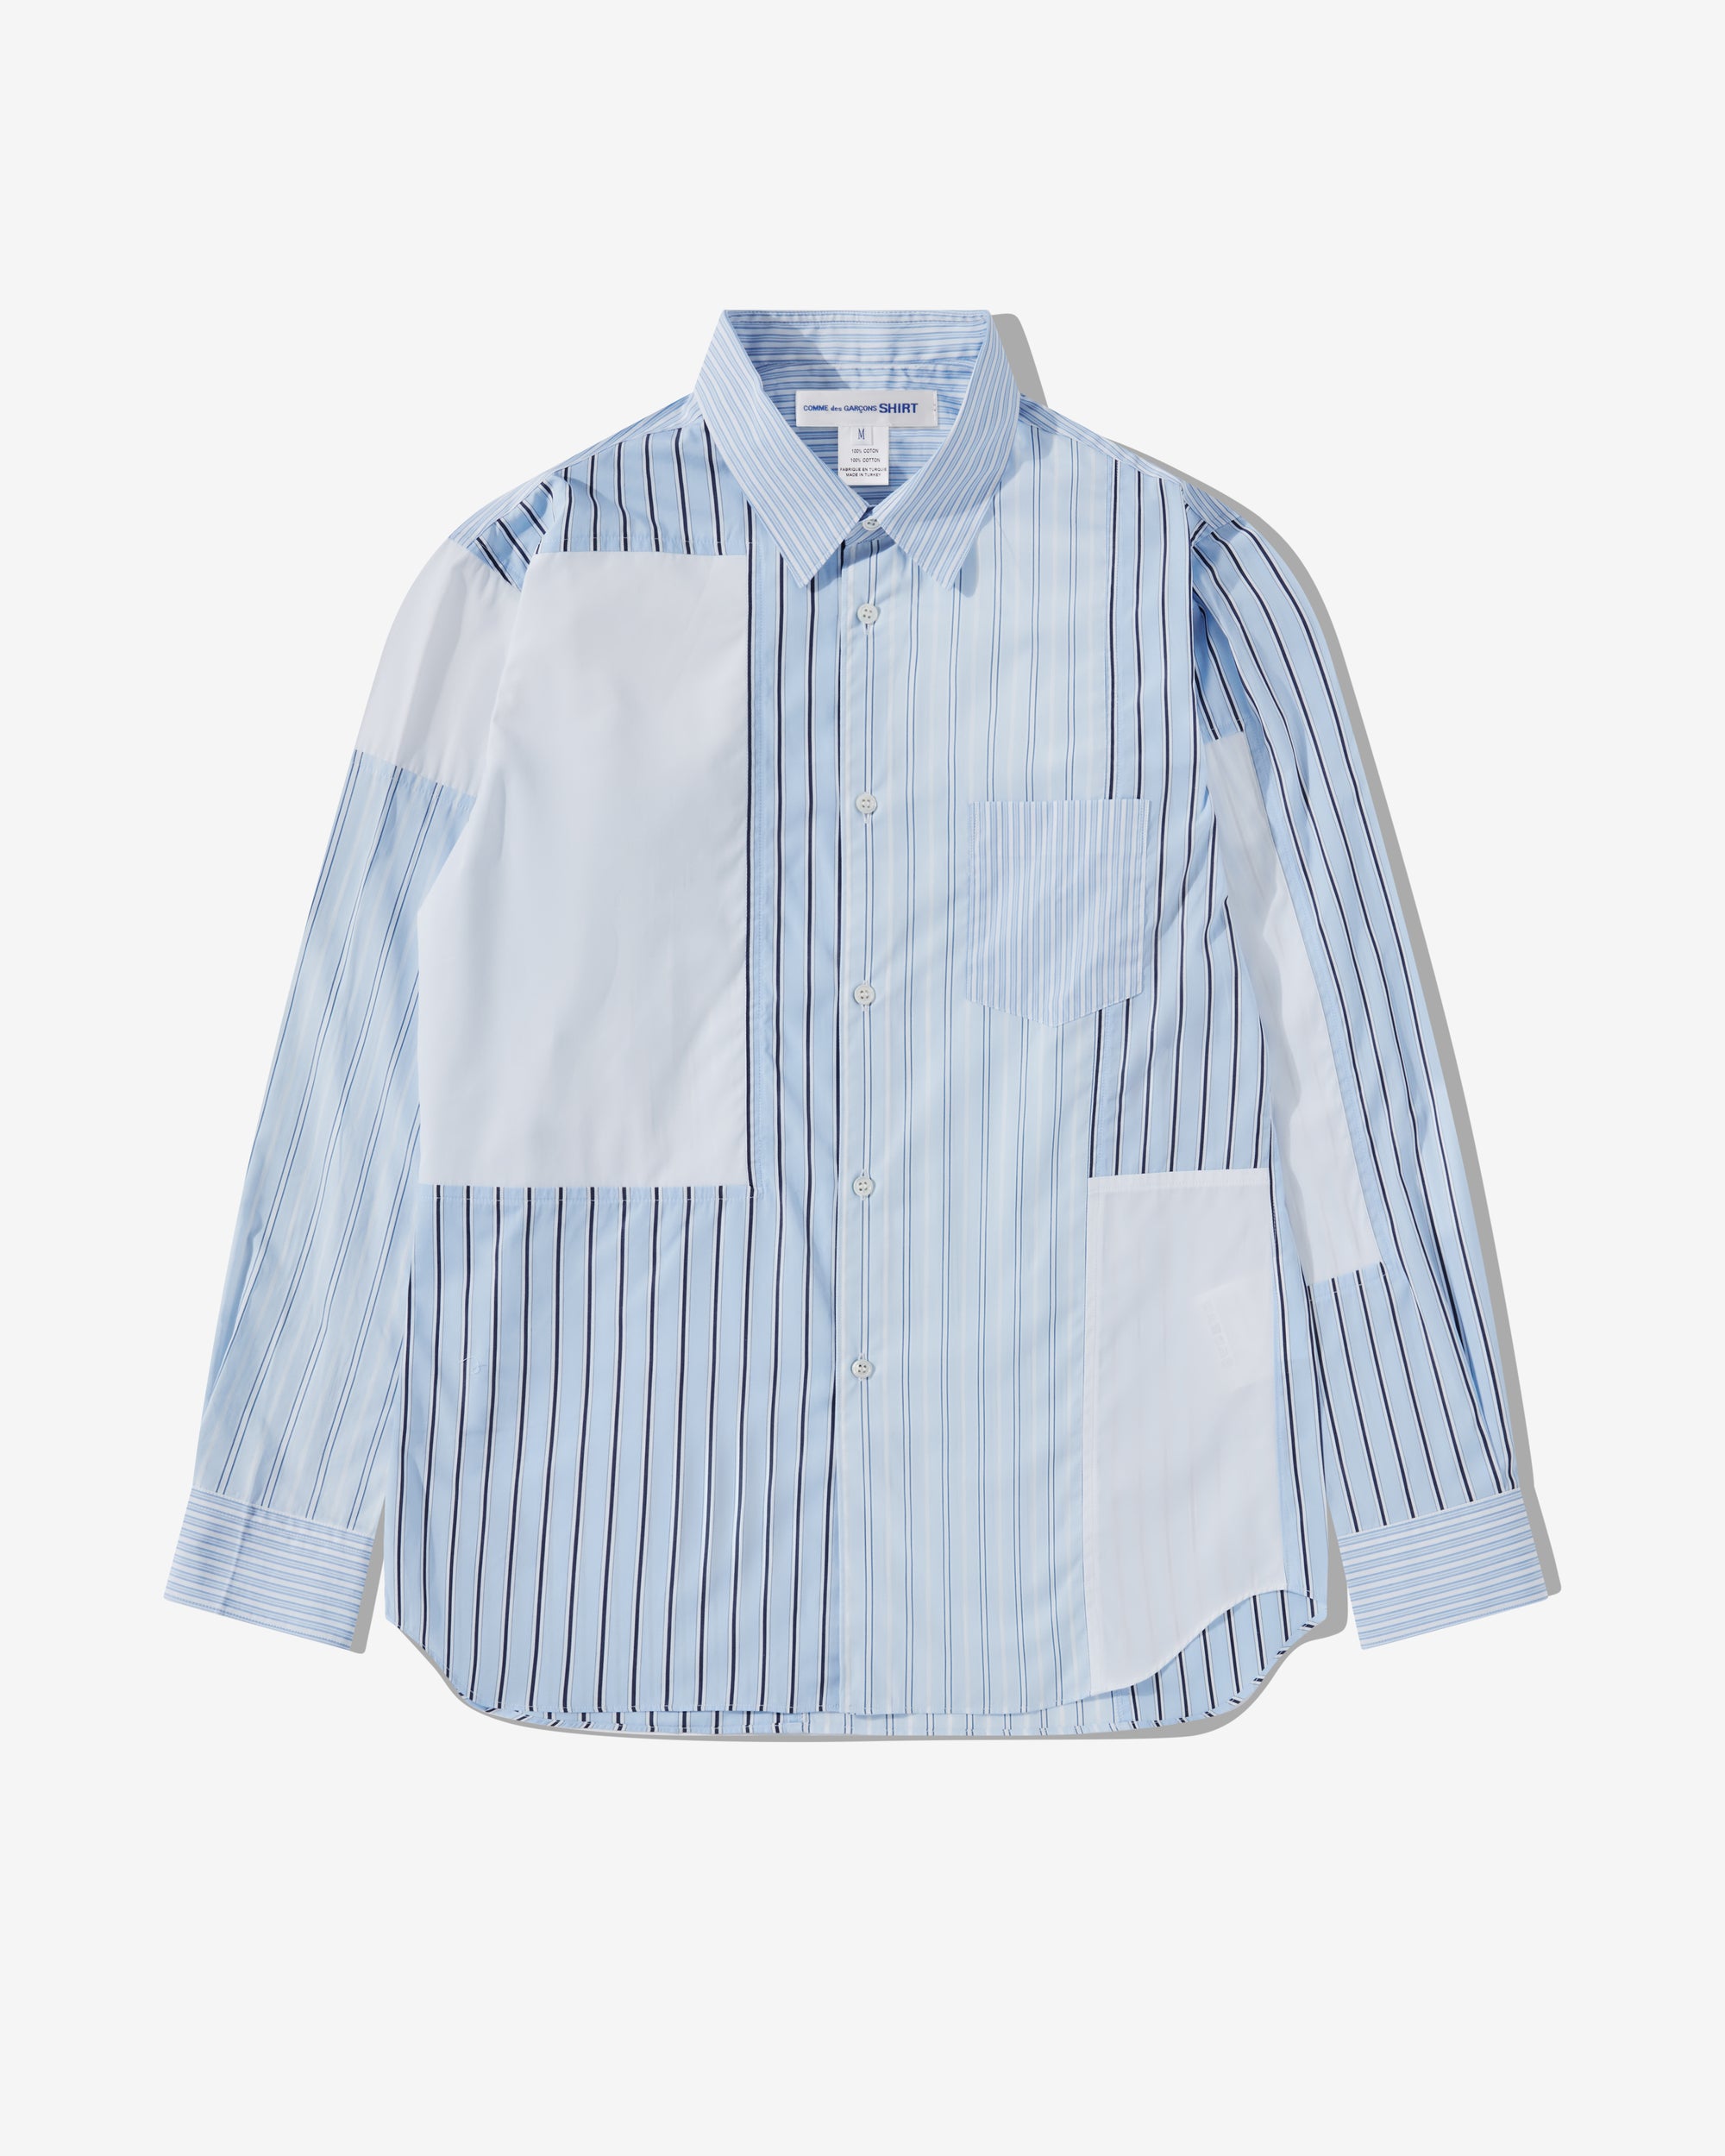 CDG Shirt - Men's Cotton Stripe Poplin Shirt - (White) view 1